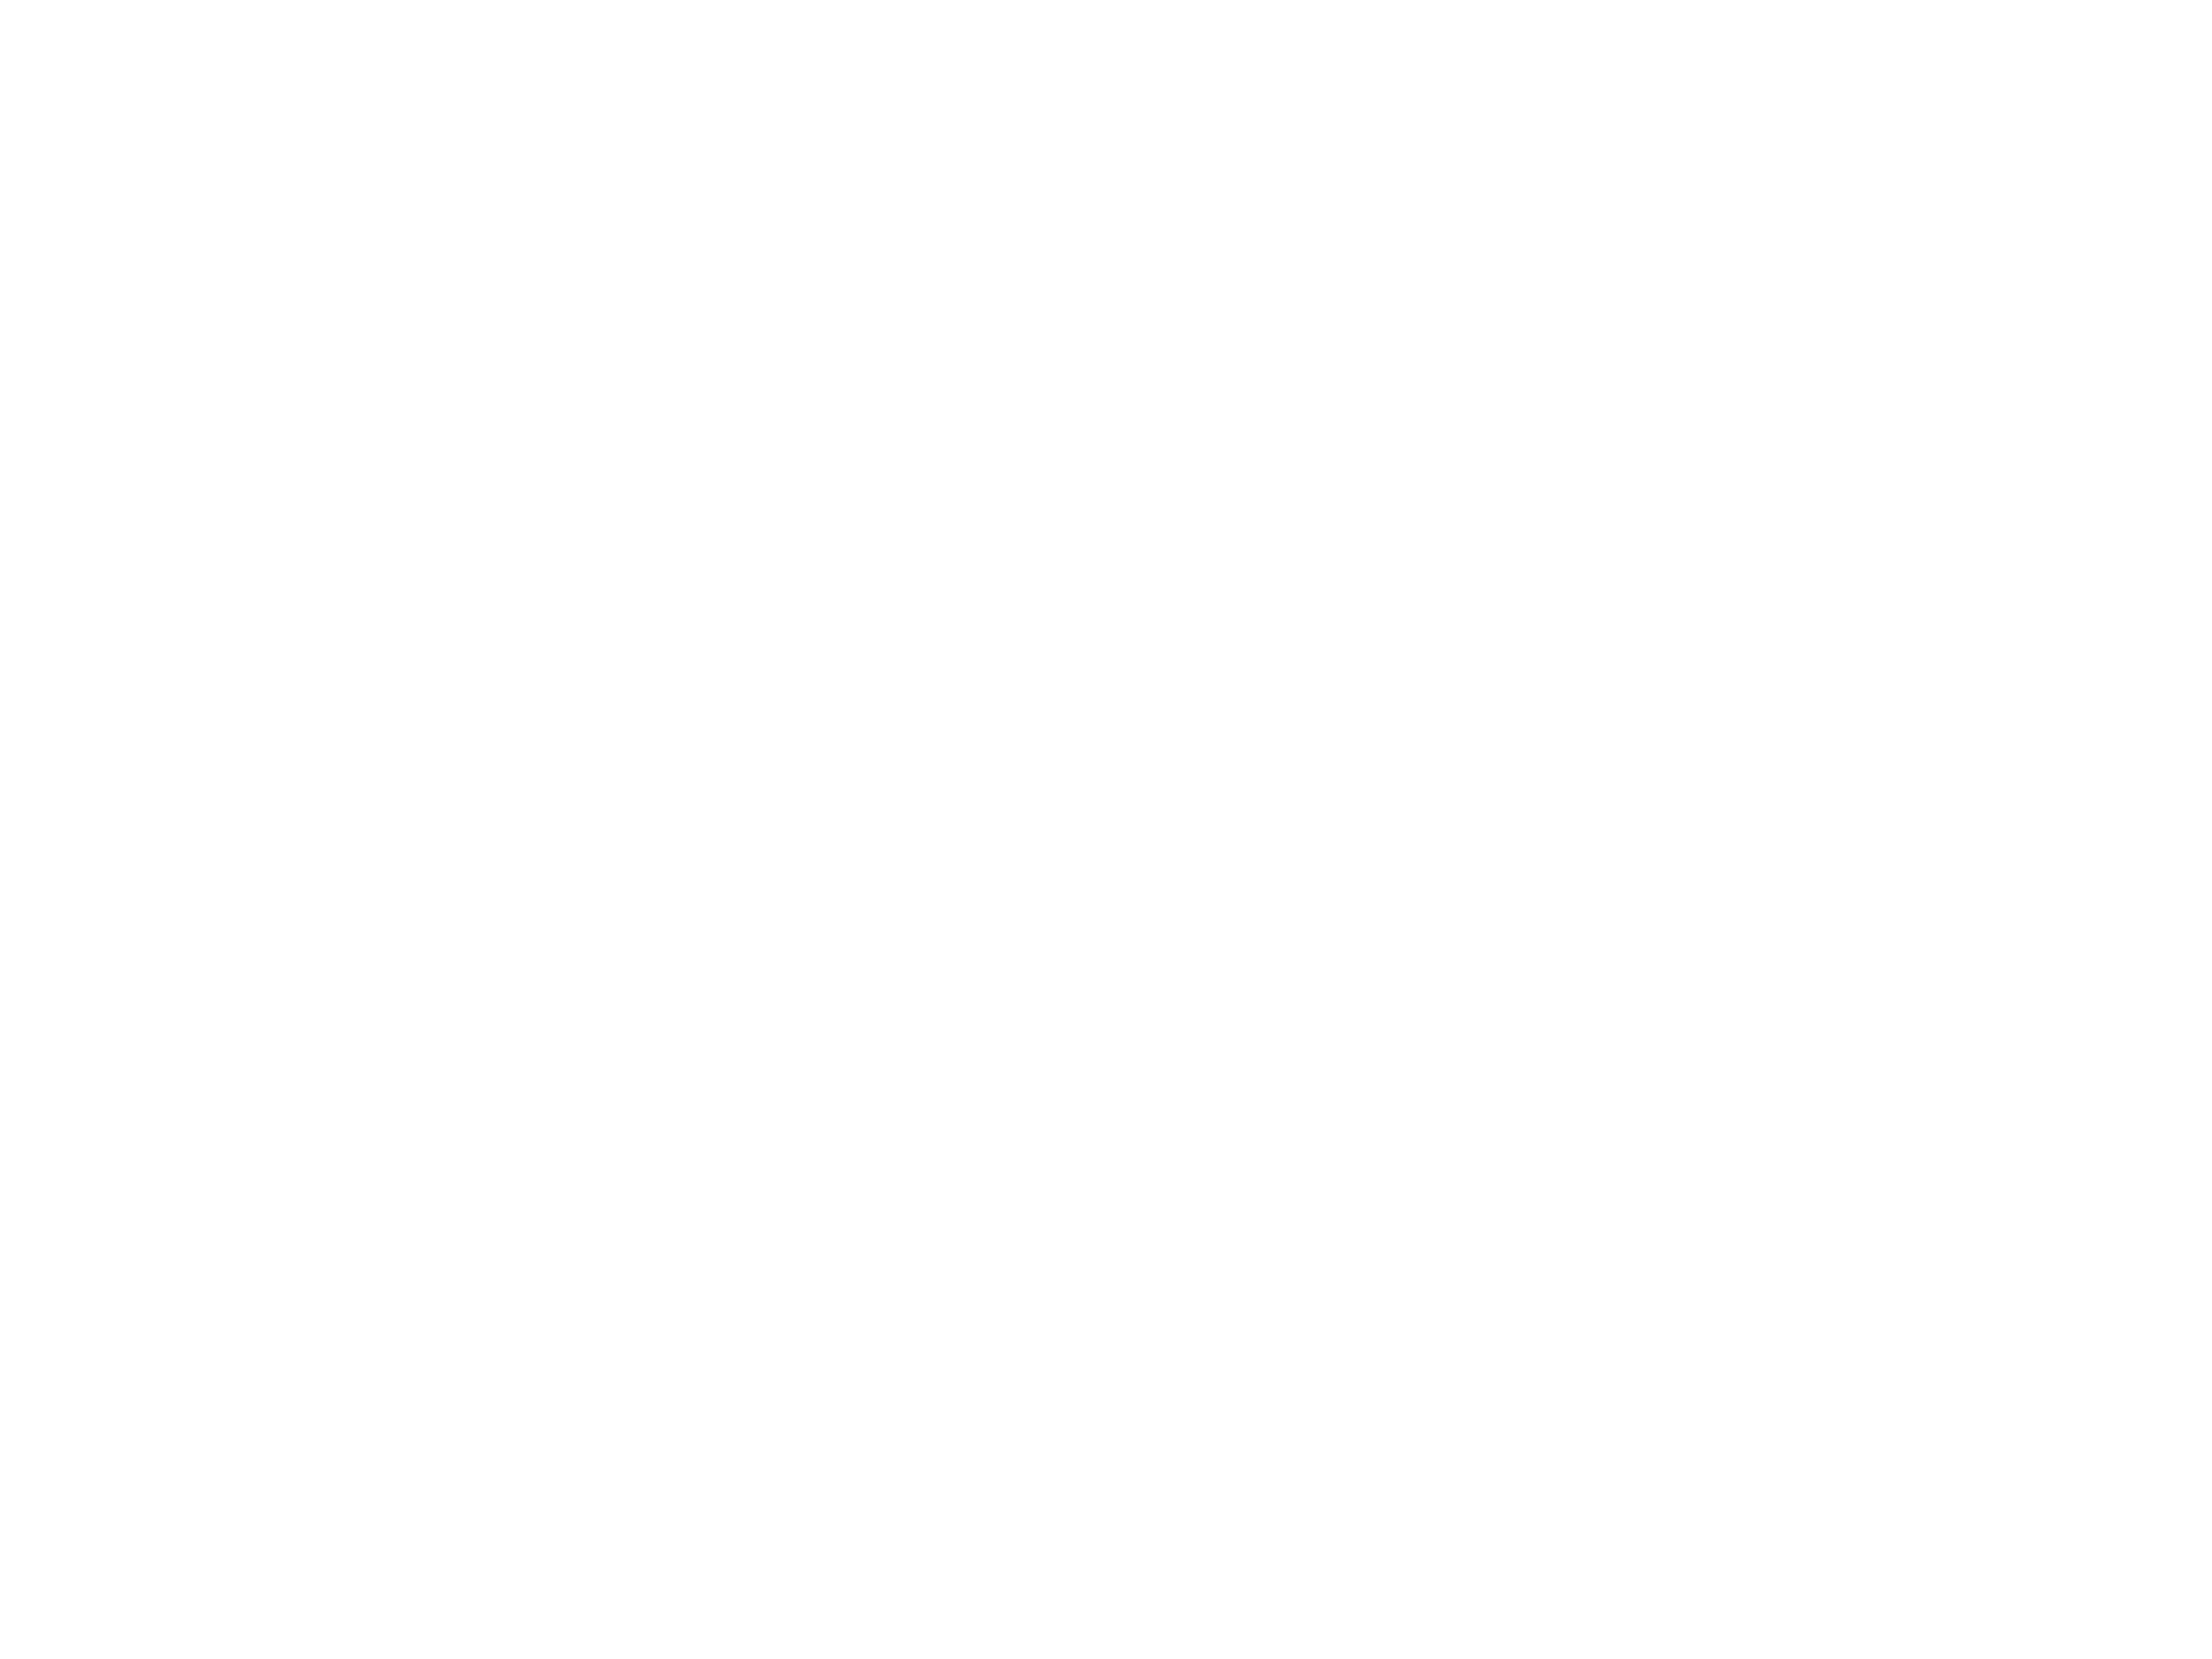 ROVR Score